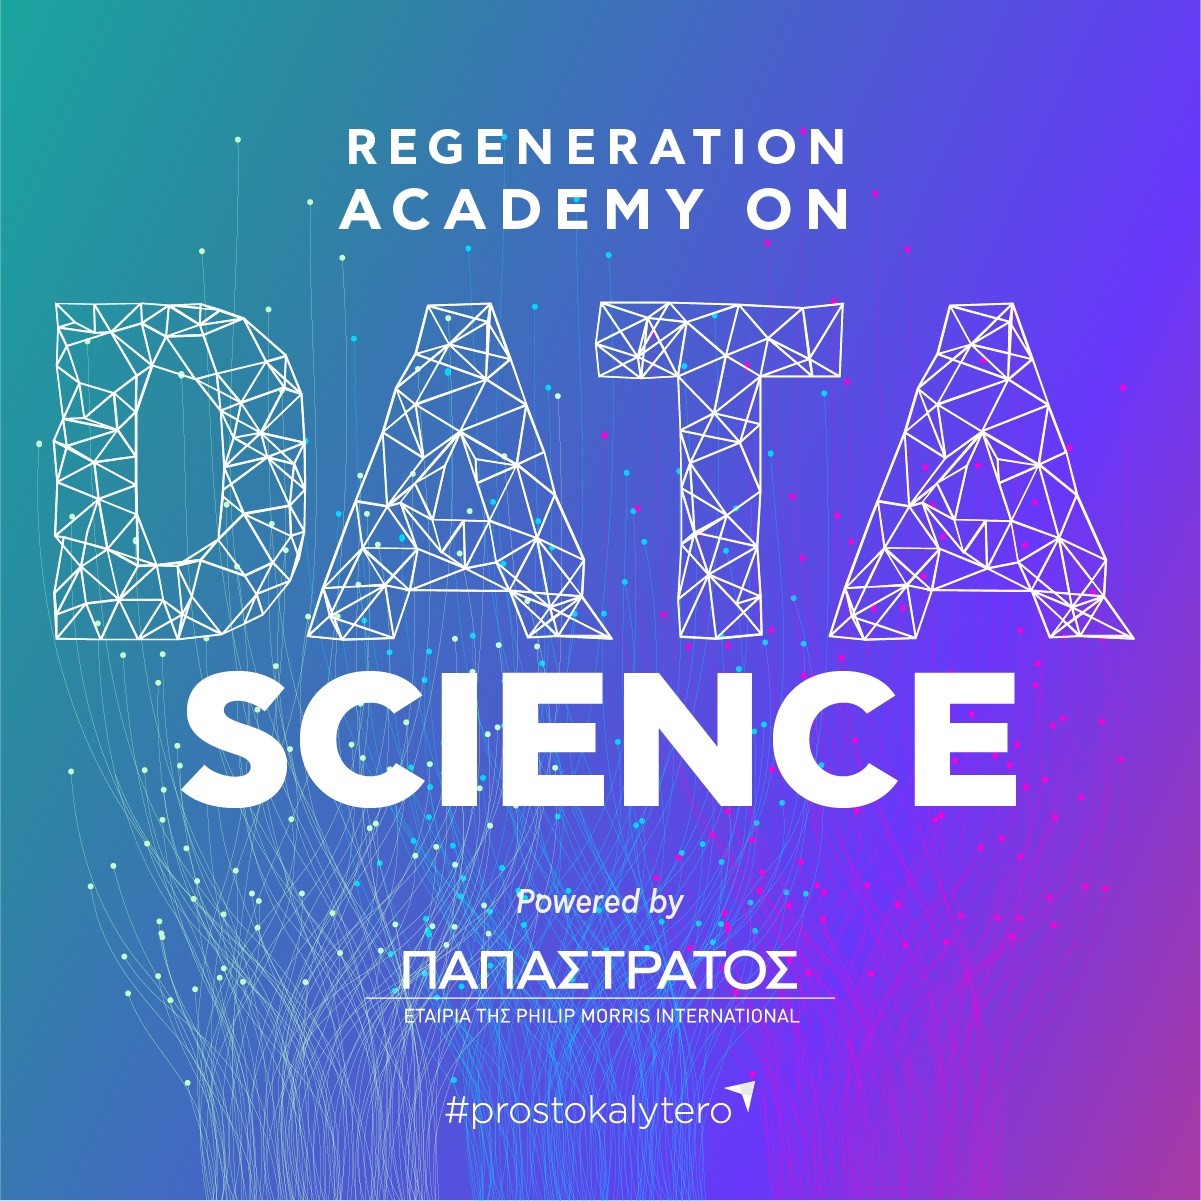 Μεγάλη συνεργασία ReGeneration - Παπαστράτος Δημιουργία Ακαδημίας Data Science για νέους και νέες πτυχιούχους